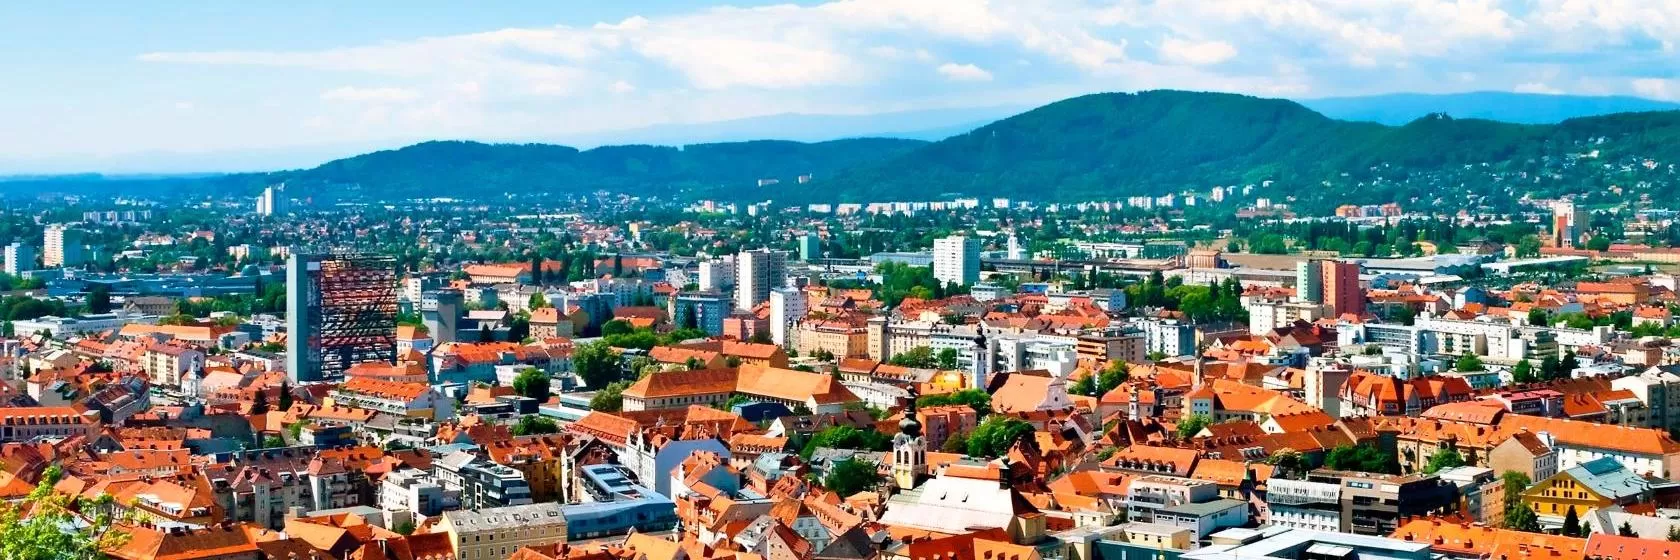 Graz, Styria Hotels & Accommodation